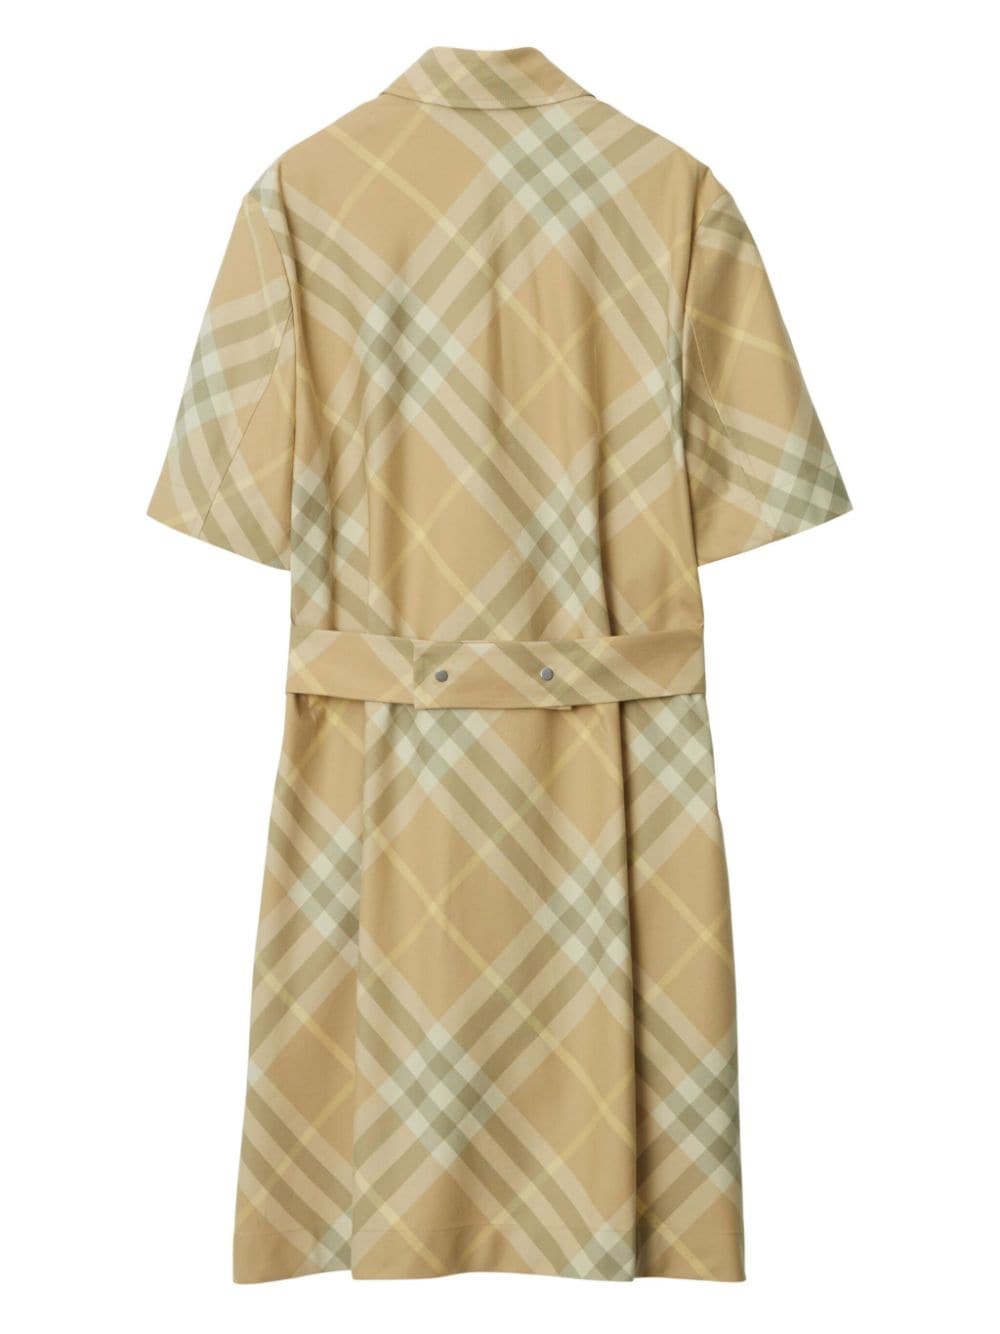 Vintage Check Cotton Dress - Beige